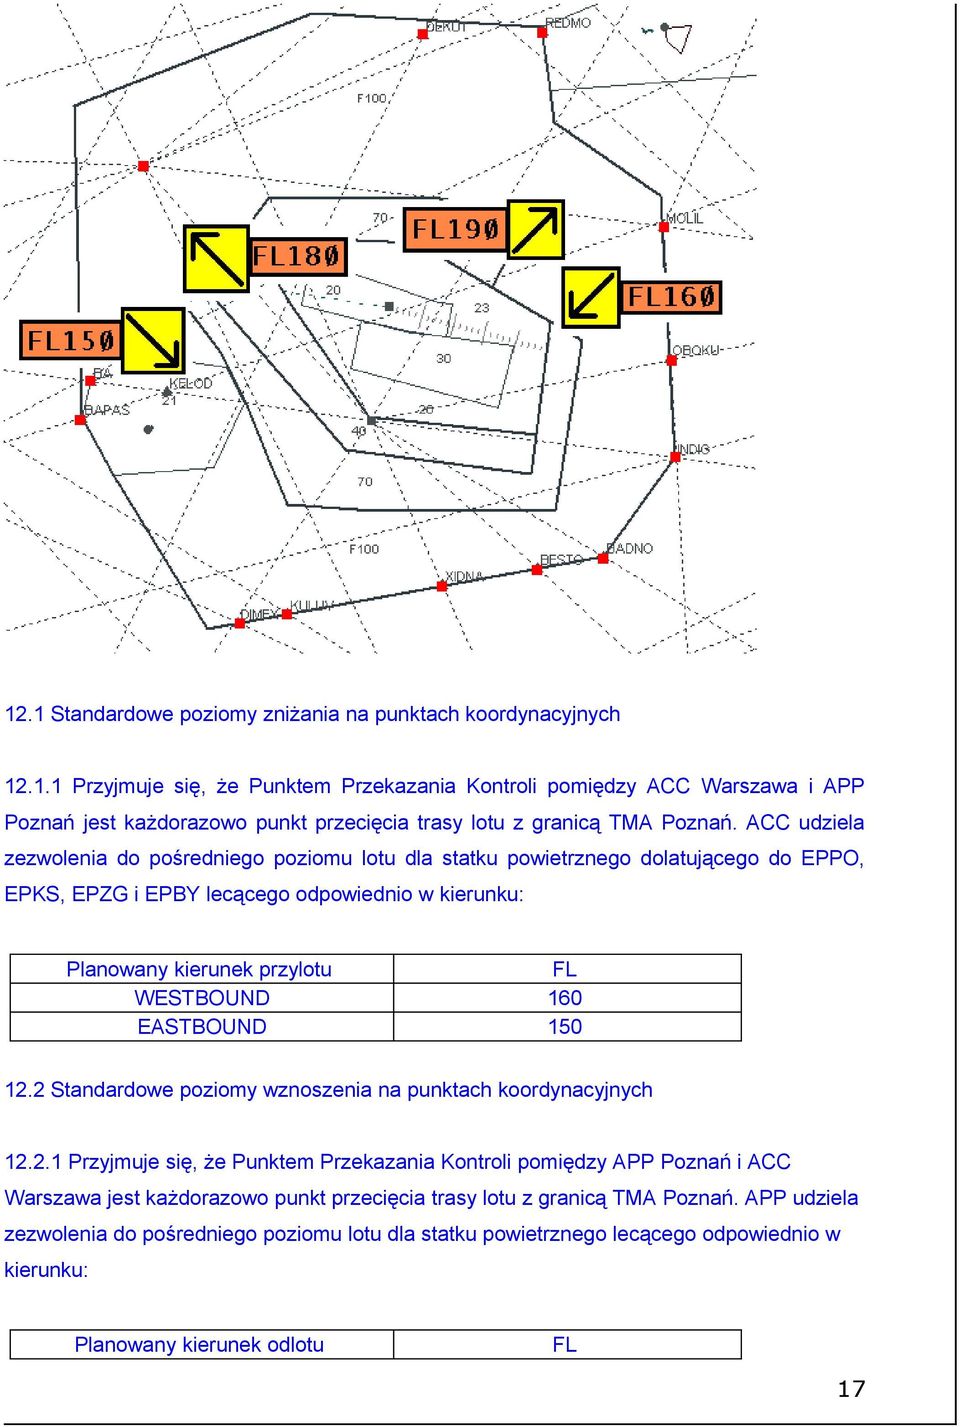 FL 160 150 12.2 Standardowe poziomy wznoszenia na punktach koordynacyjnych 12.2.1 Przyjmuje się, że Punktem Przekazania Kontroli pomiędzy APP Poznań i ACC Warszawa jest każdorazowo punkt przecięcia trasy lotu z granicą TMA Poznań.